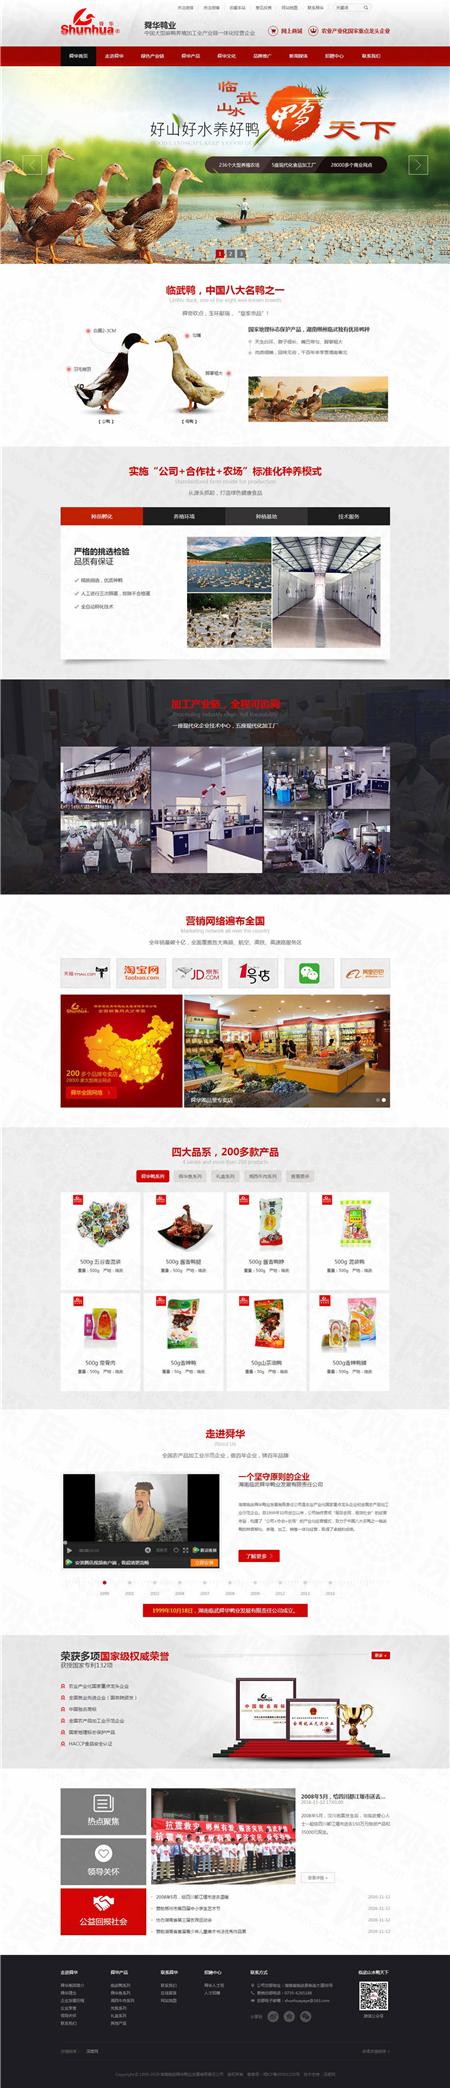 湖南临武舜华鸭业营销品牌网站建设案例